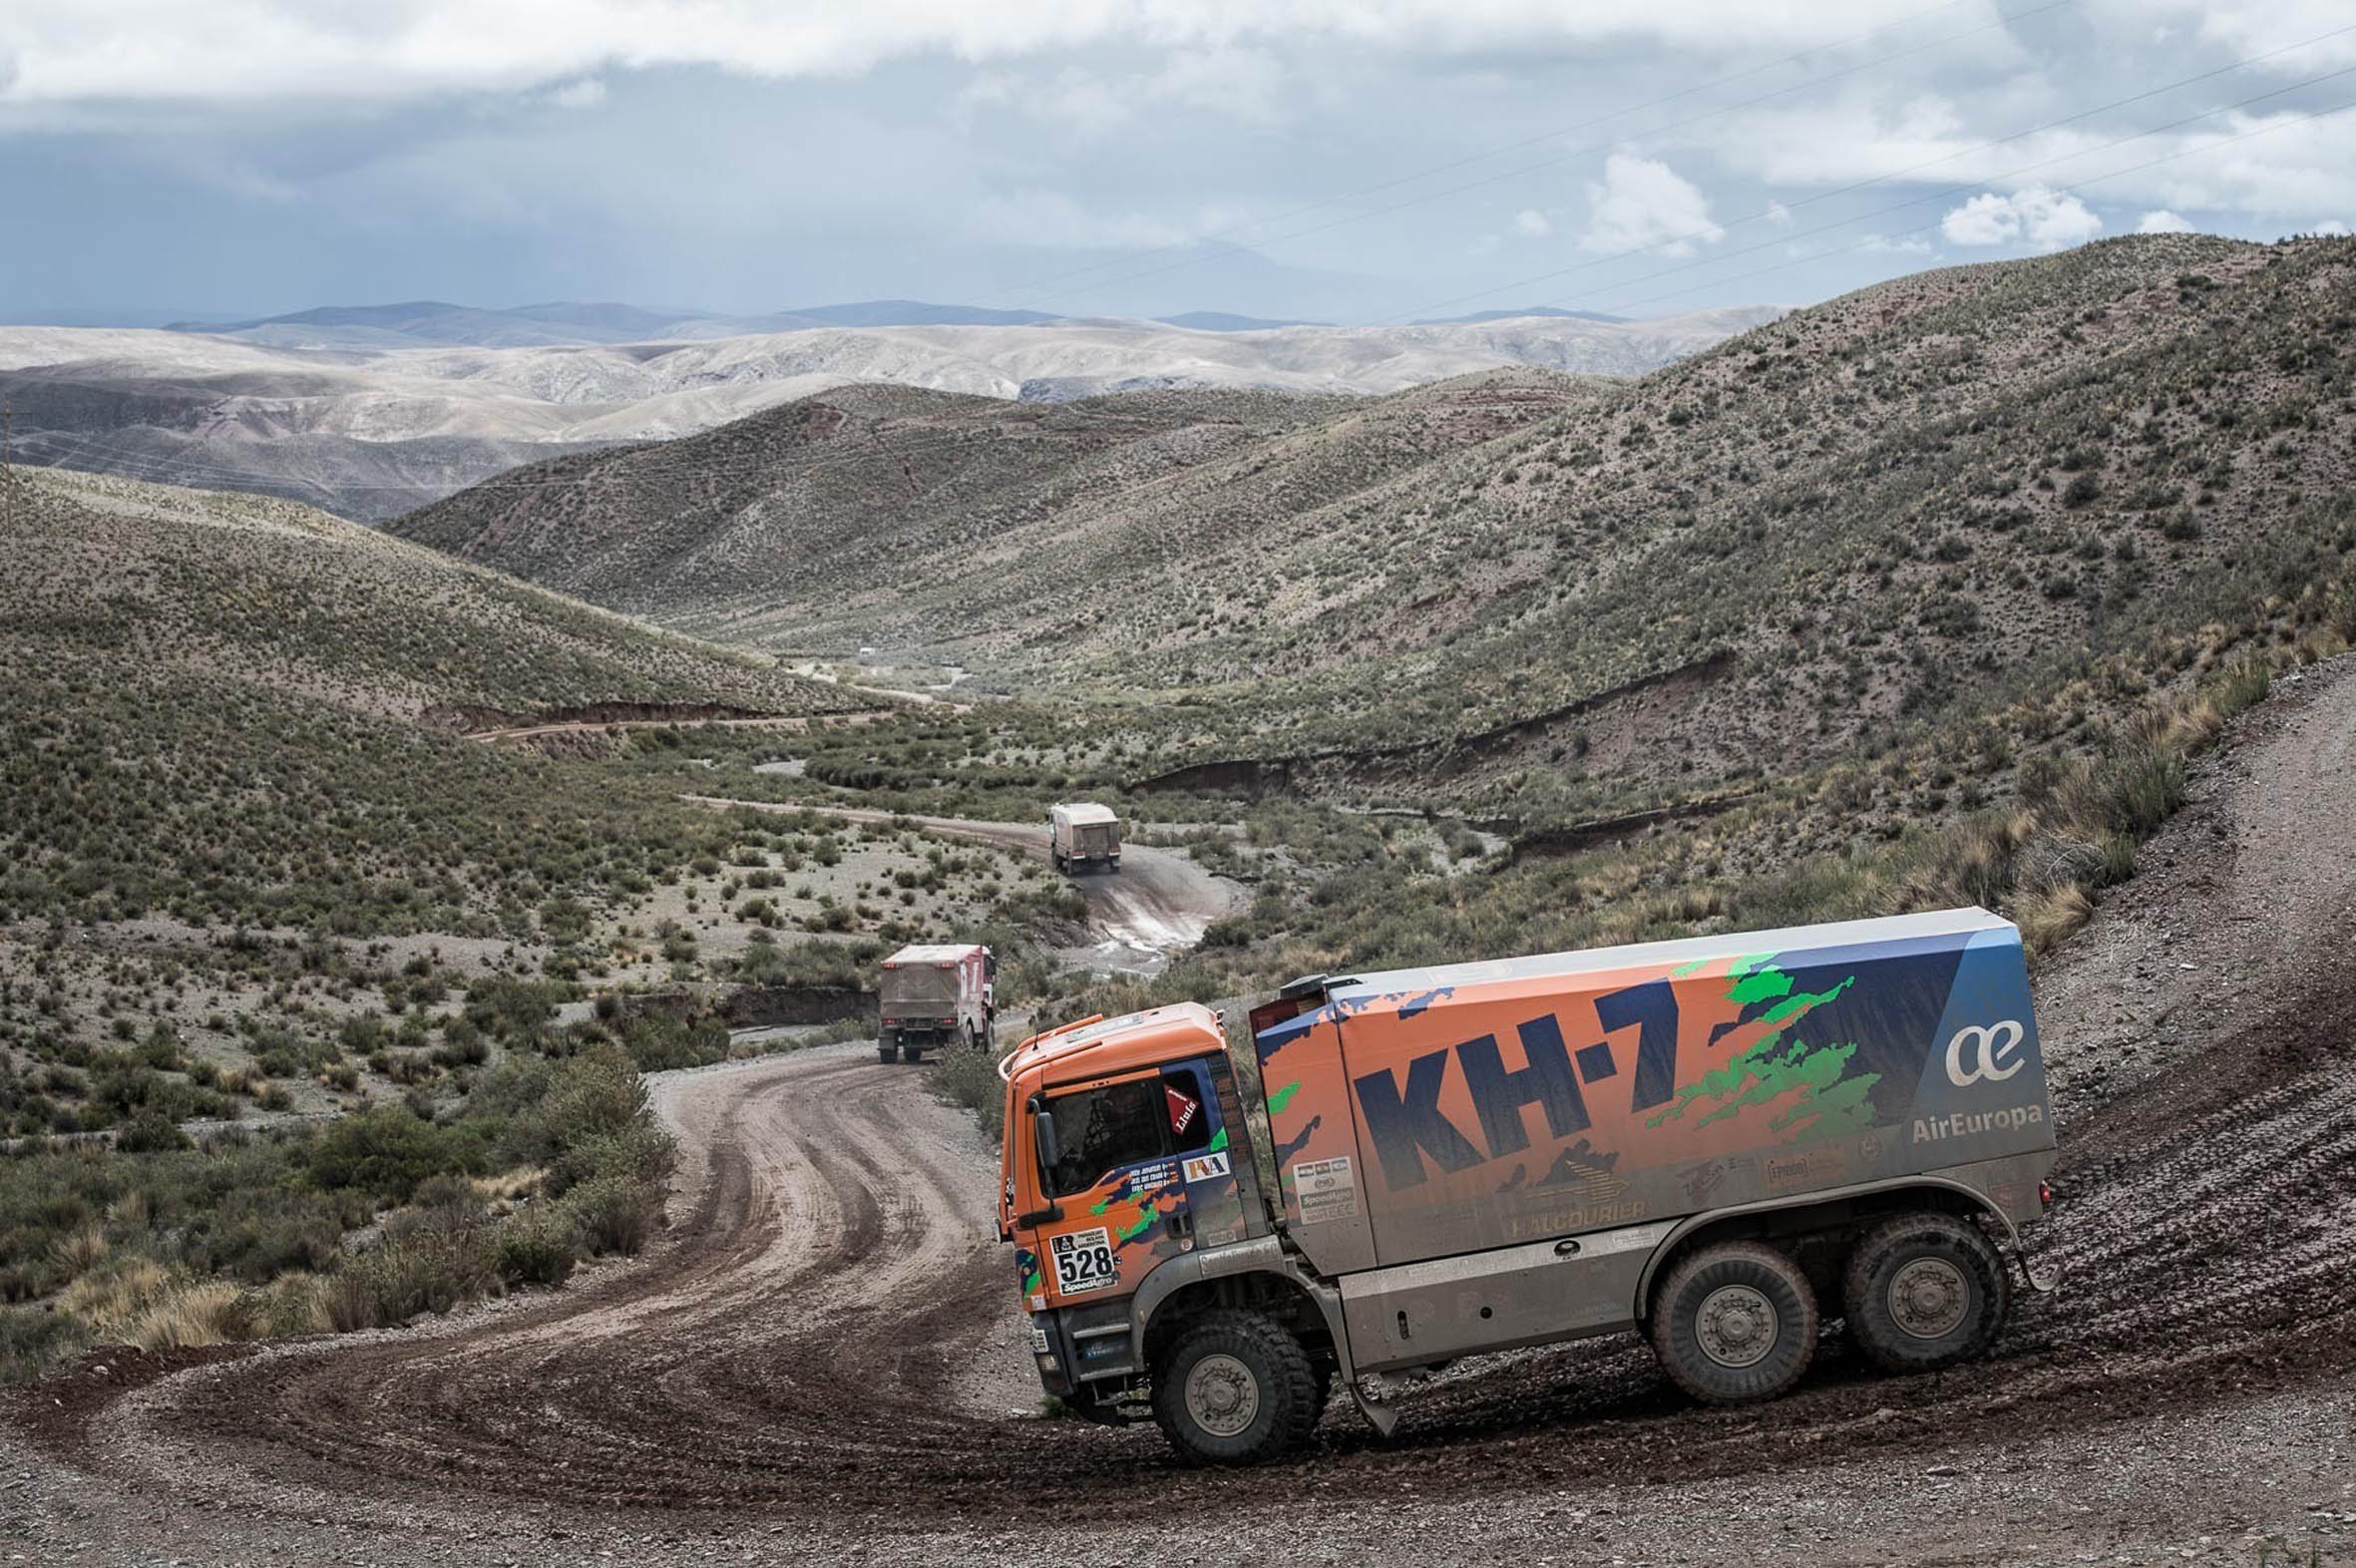 El camió dels vallesans, en un dels espectaculars paratges del ral·li